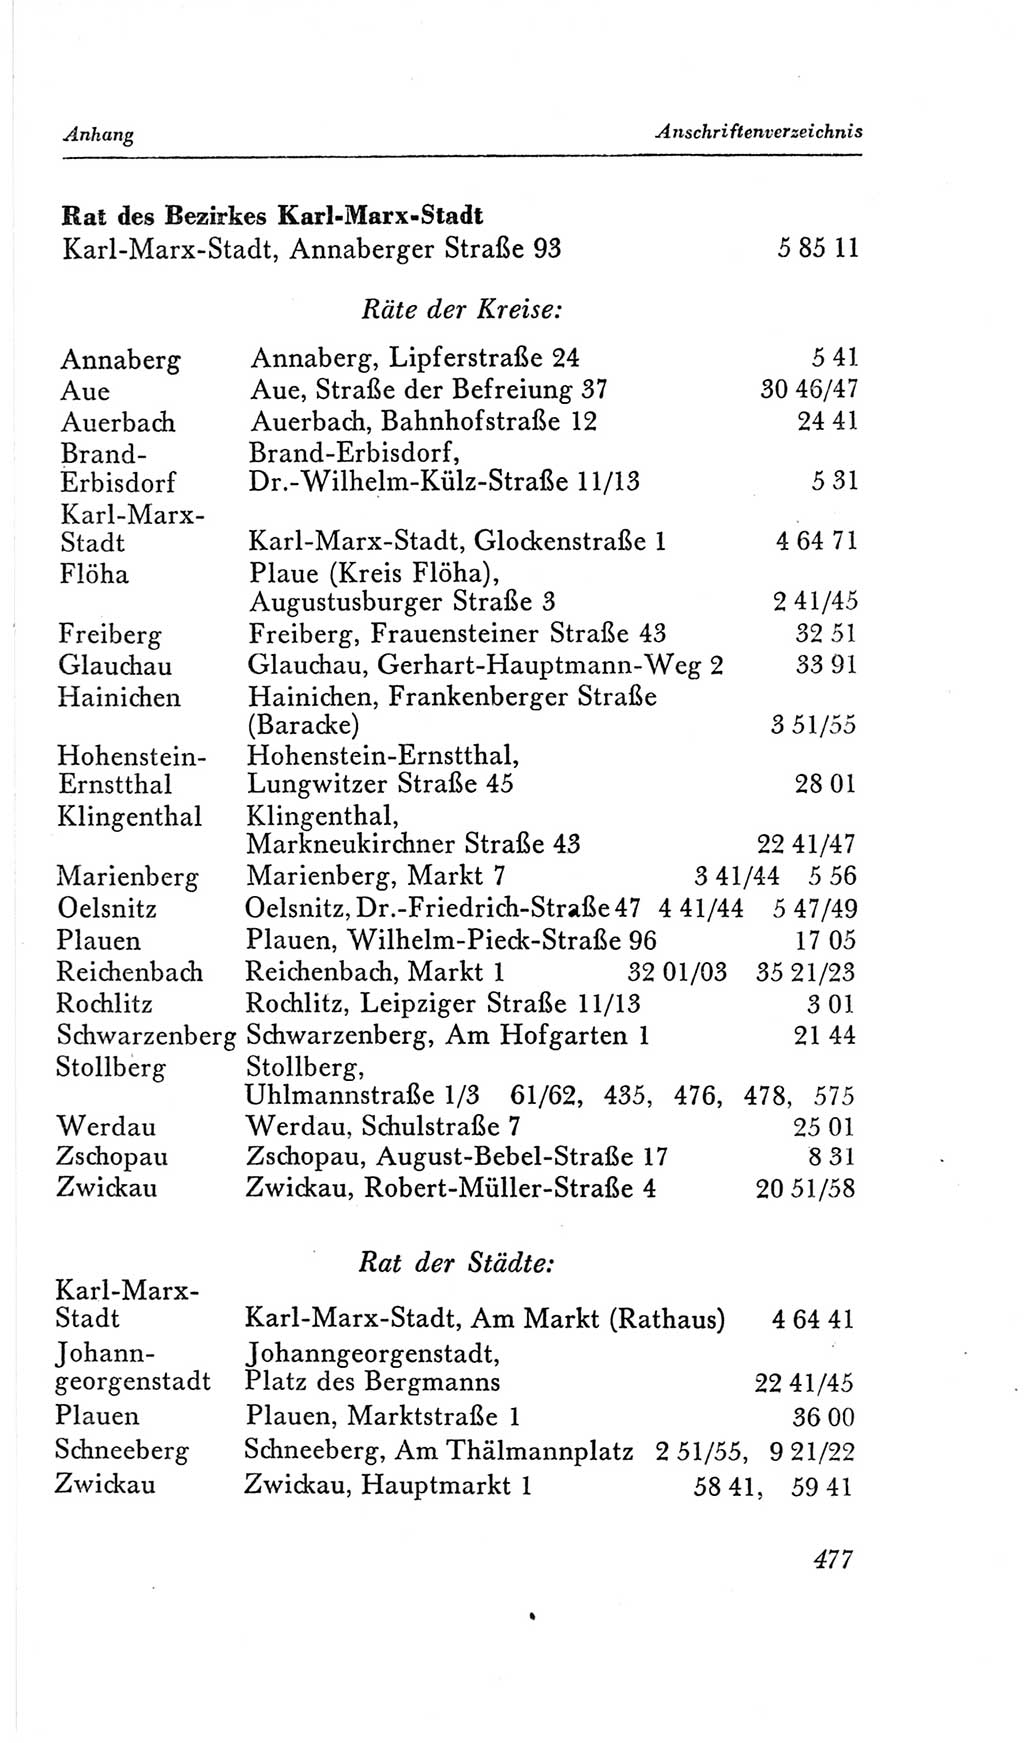 Handbuch der Volkskammer (VK) der Deutschen Demokratischen Republik (DDR), 2. Wahlperiode 1954-1958, Seite 477 (Hdb. VK. DDR, 2. WP. 1954-1958, S. 477)